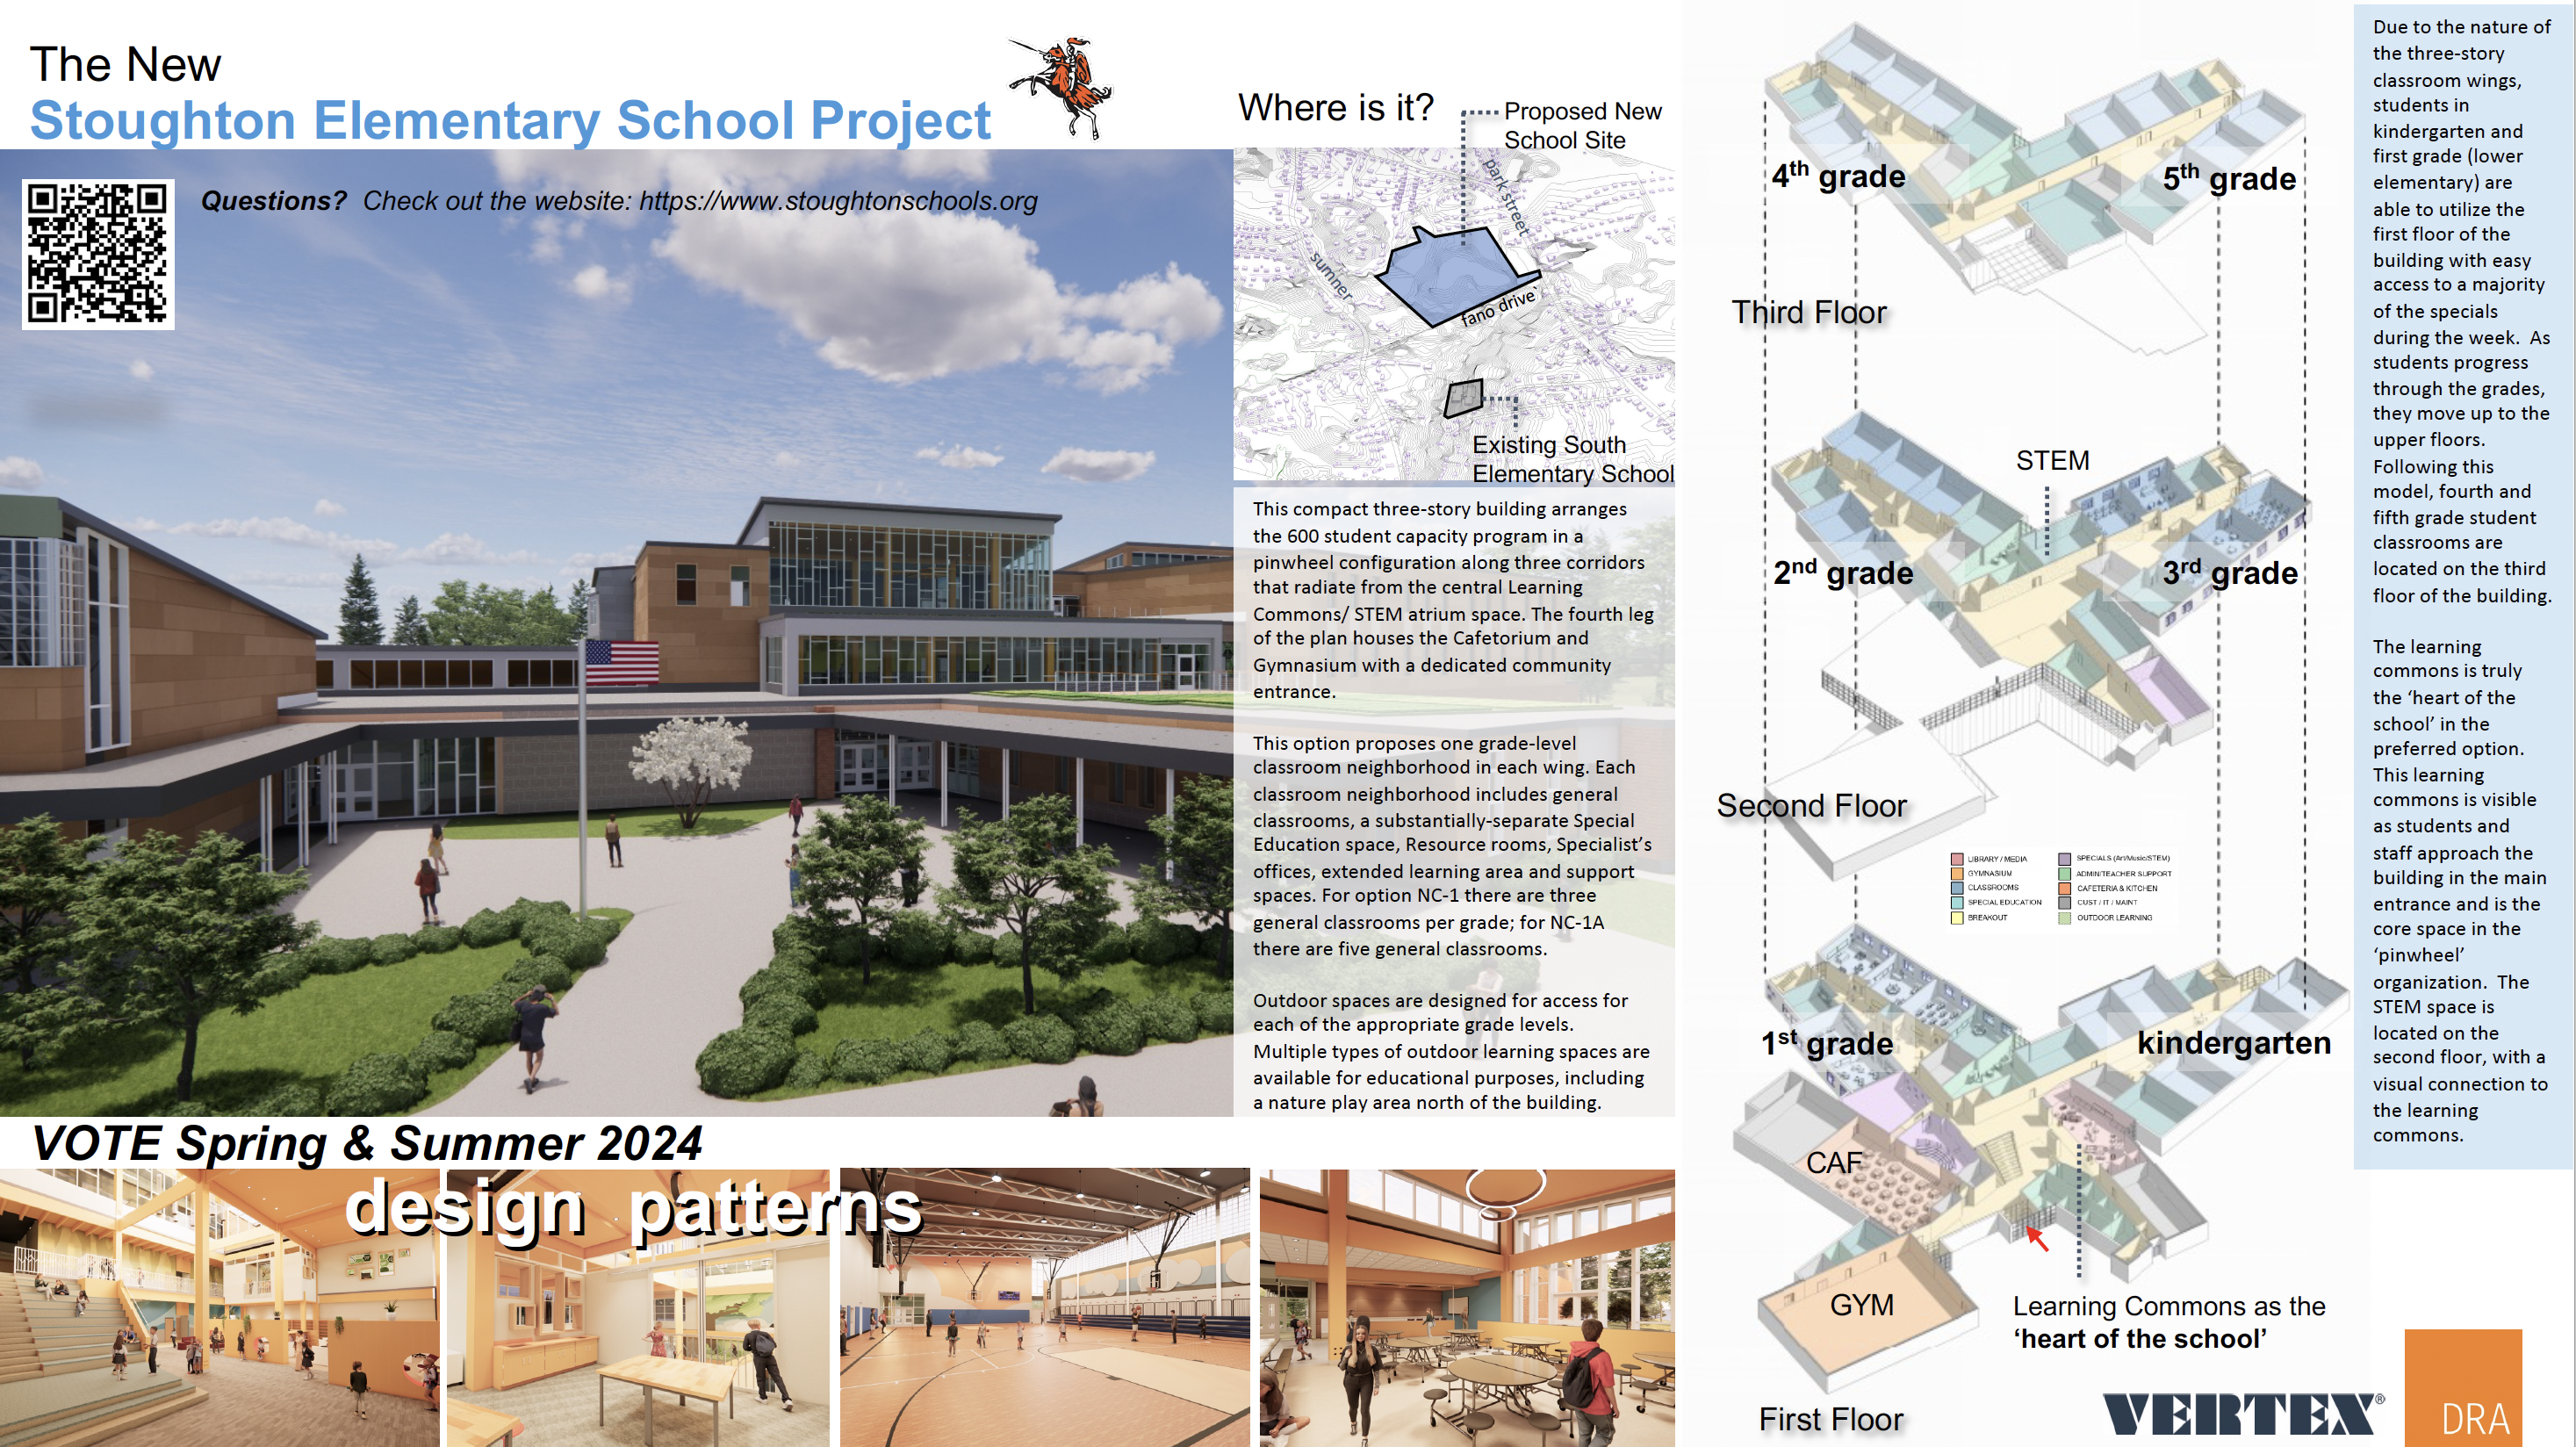 New Elementary School Building Project Info Board